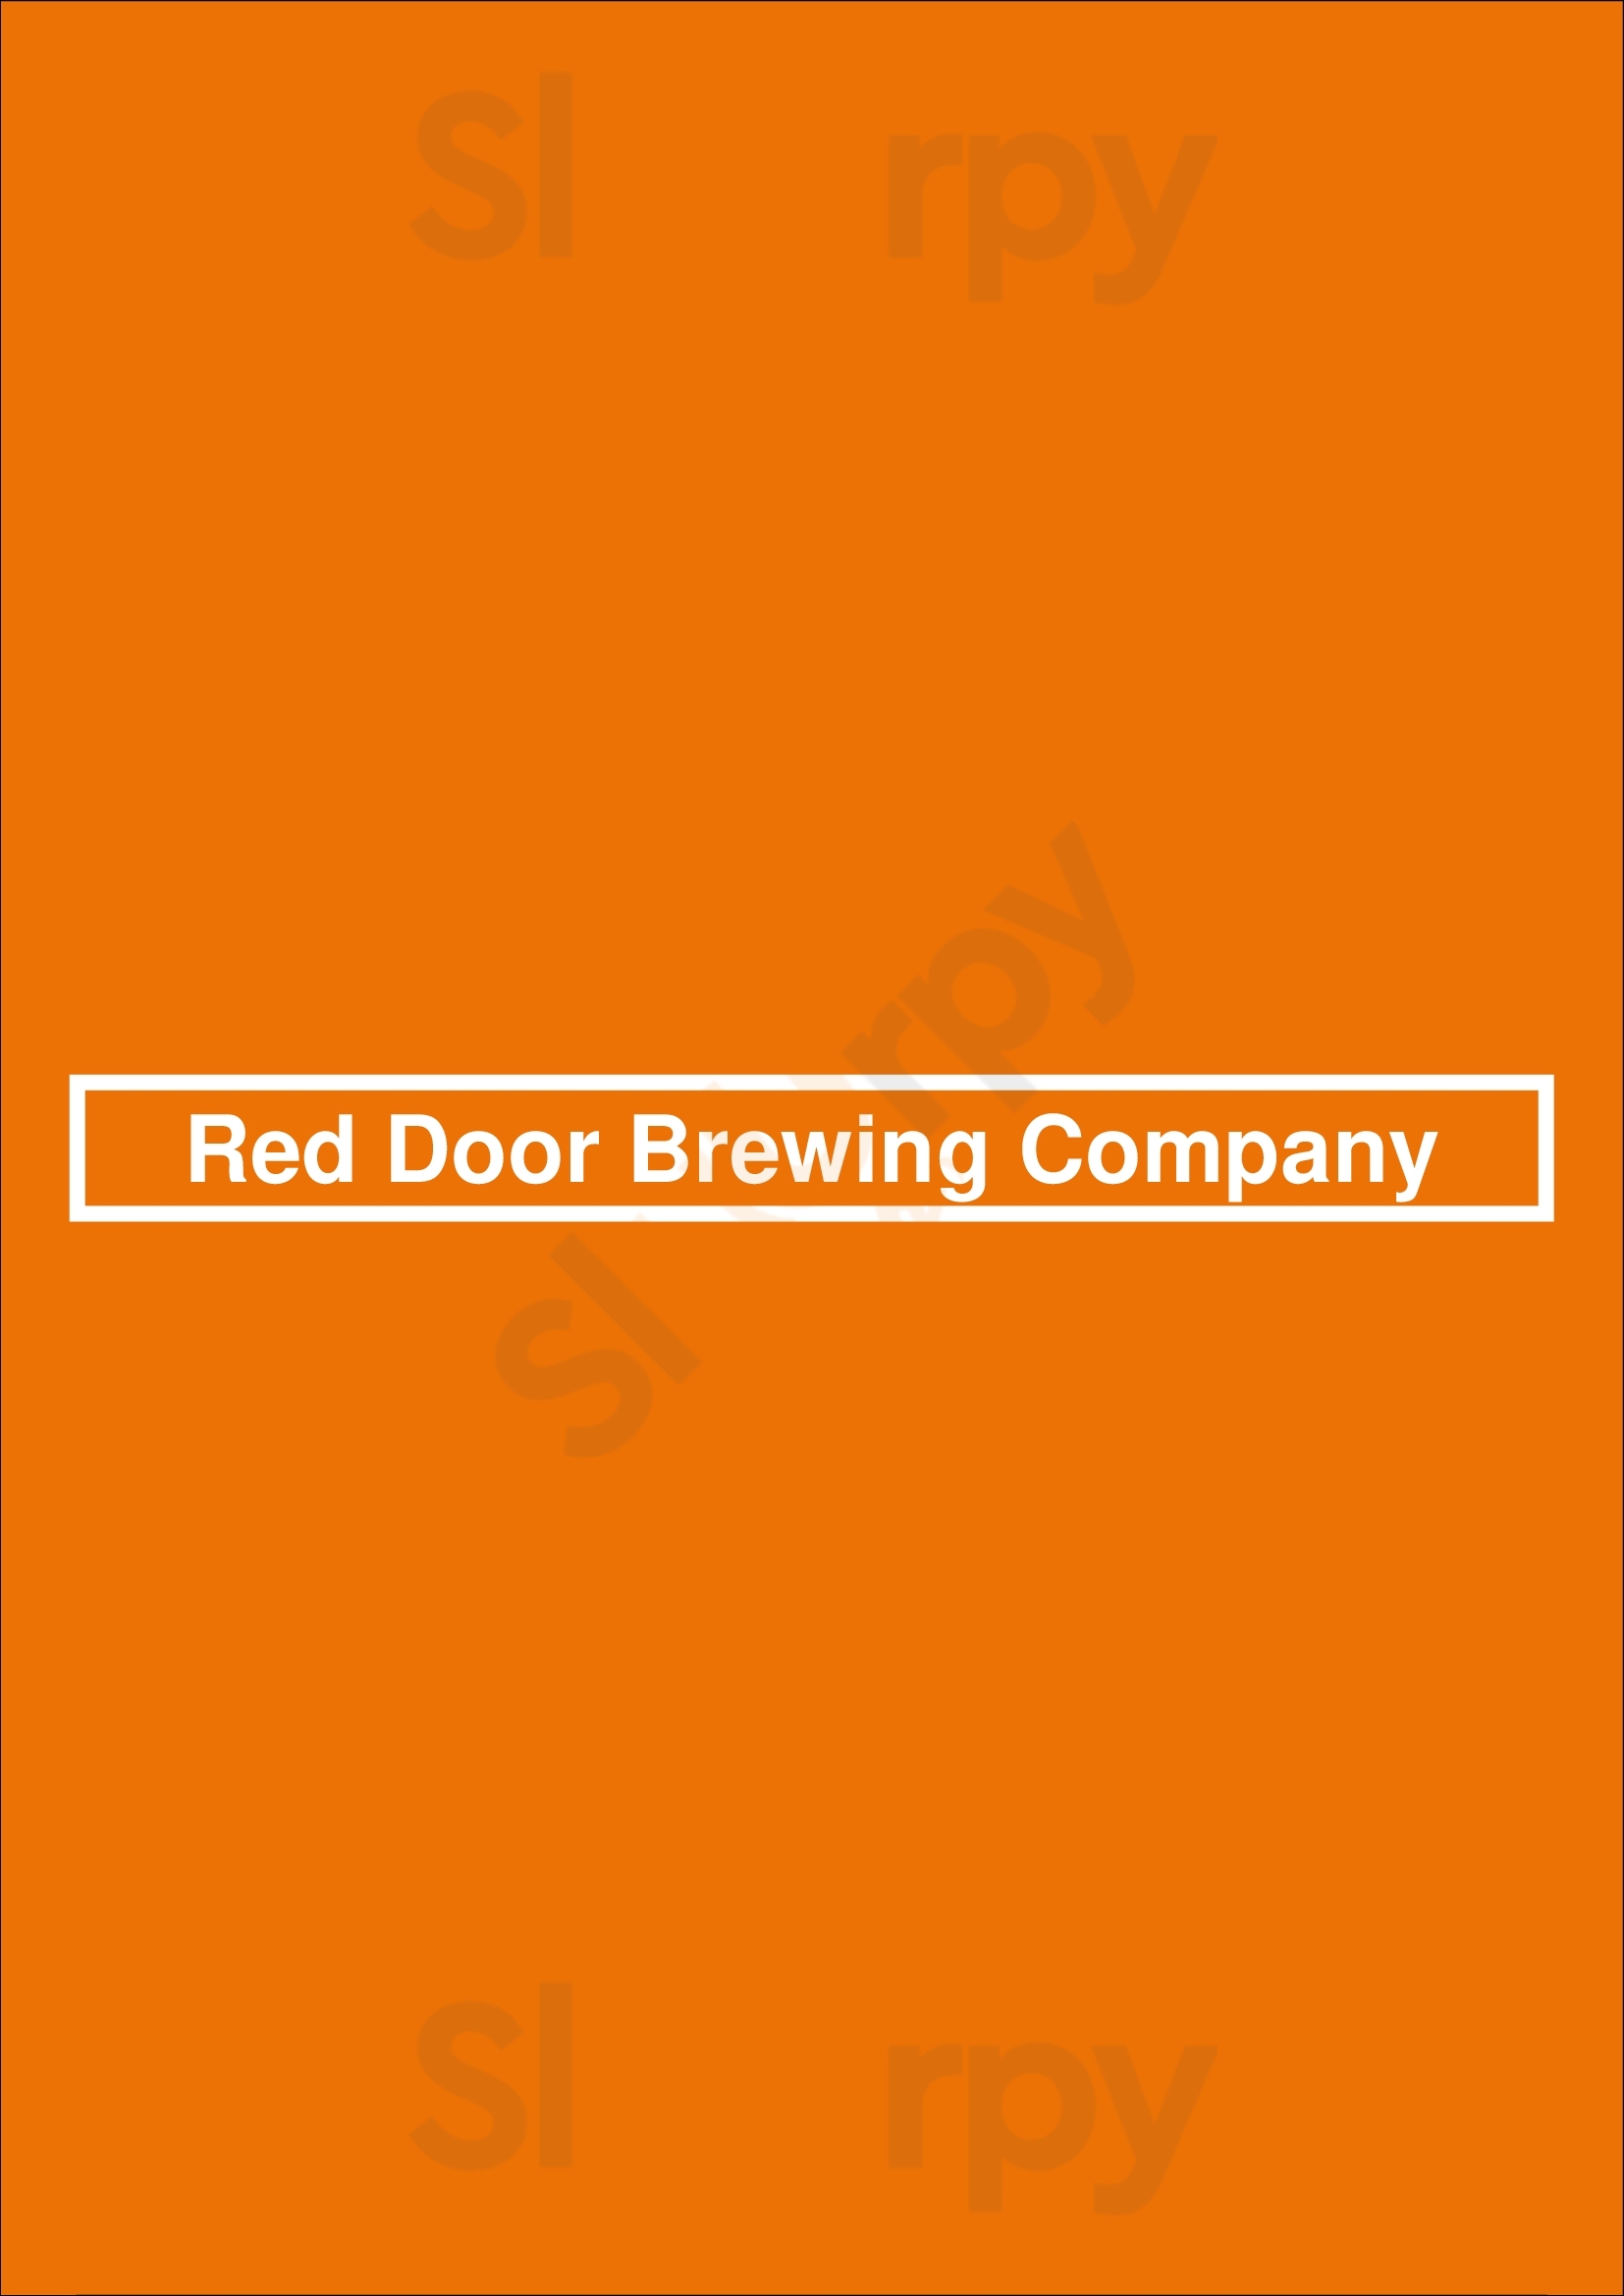 Red Door Brewing Company Albuquerque Menu - 1